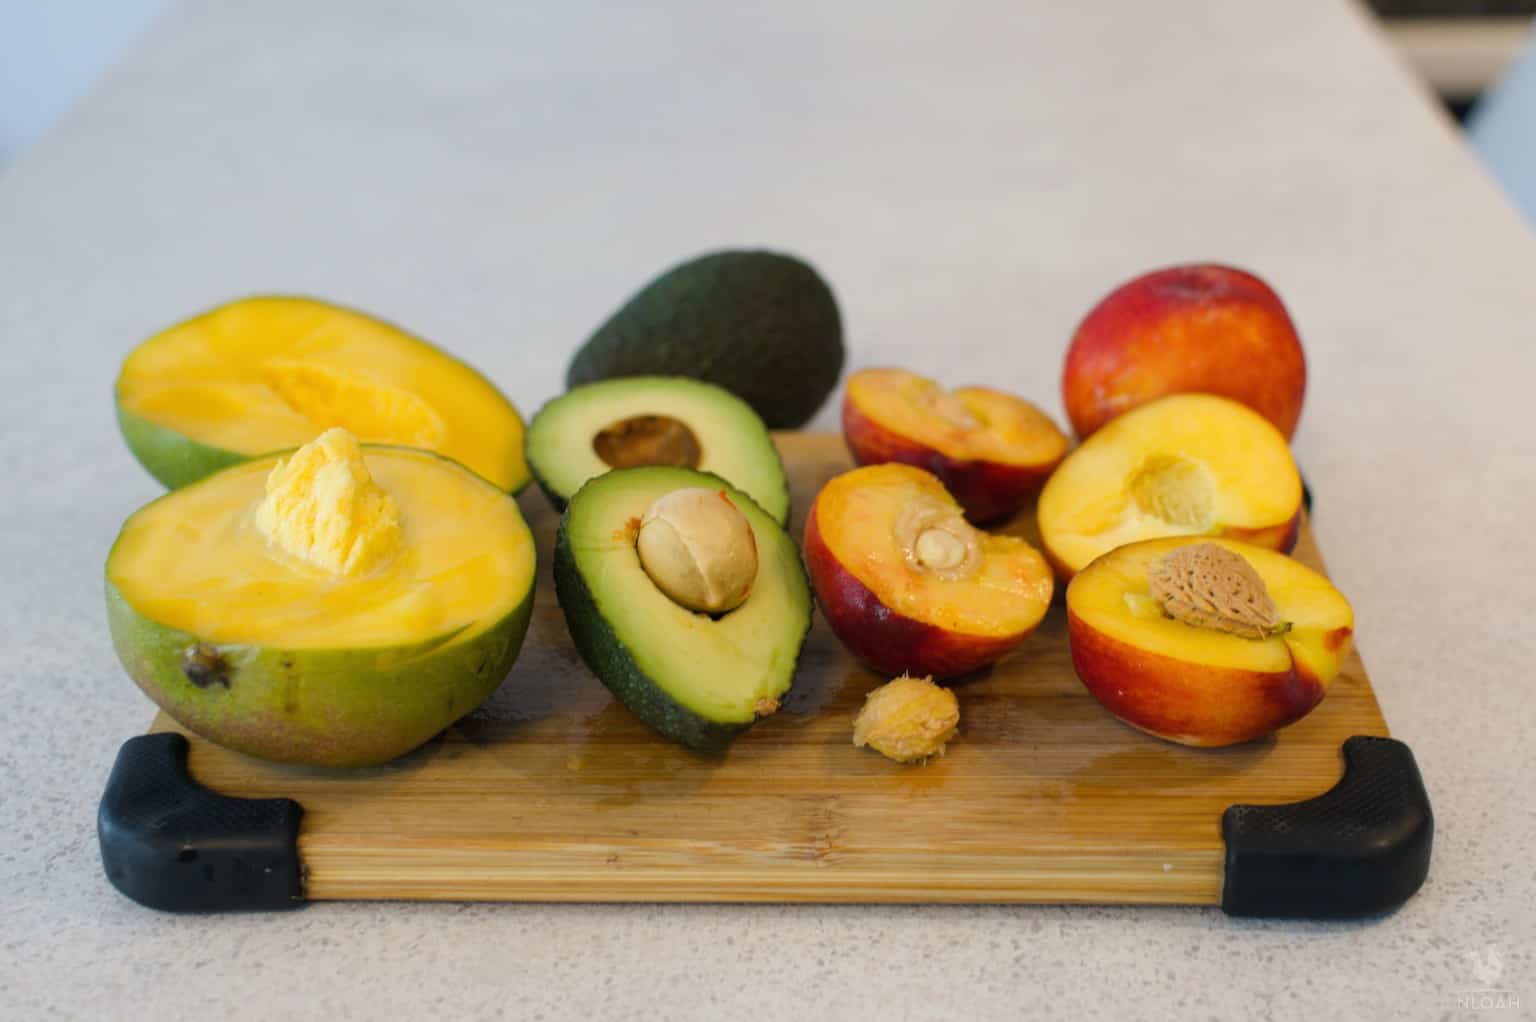 mango avocado peaches and nectarines next to their seeds